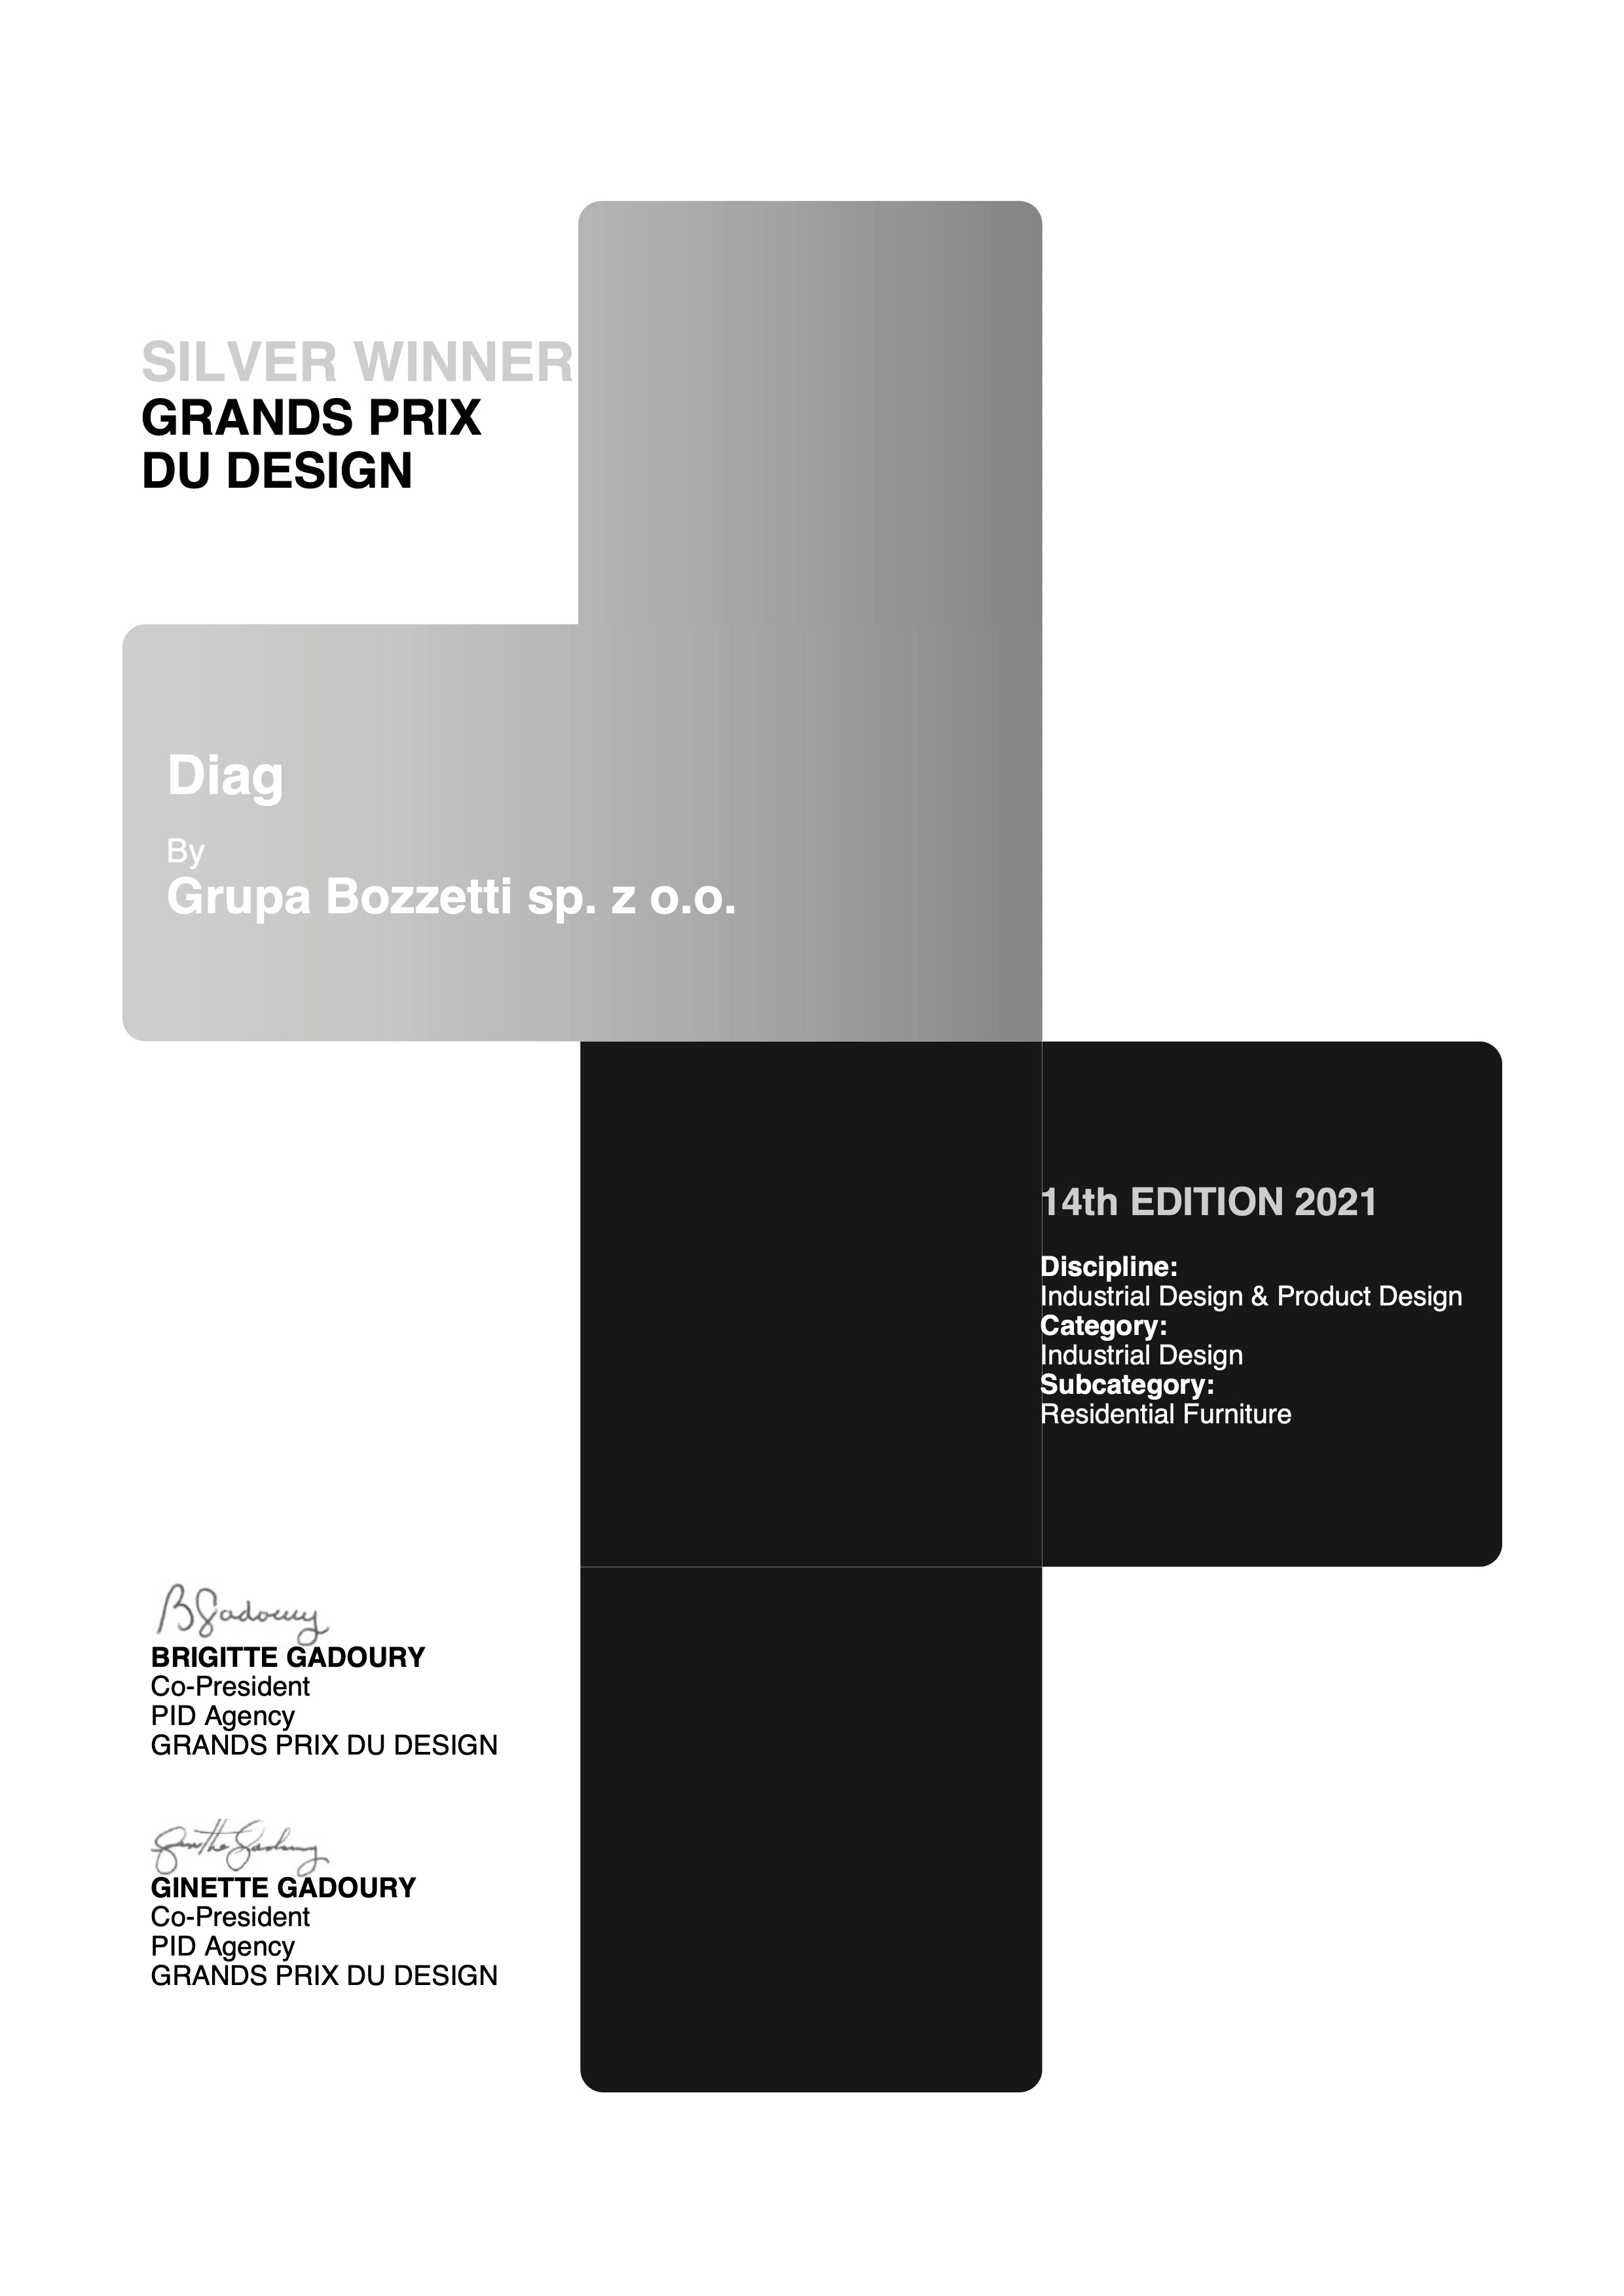 Grands Prix du Design 2021 Silver Winner certificate